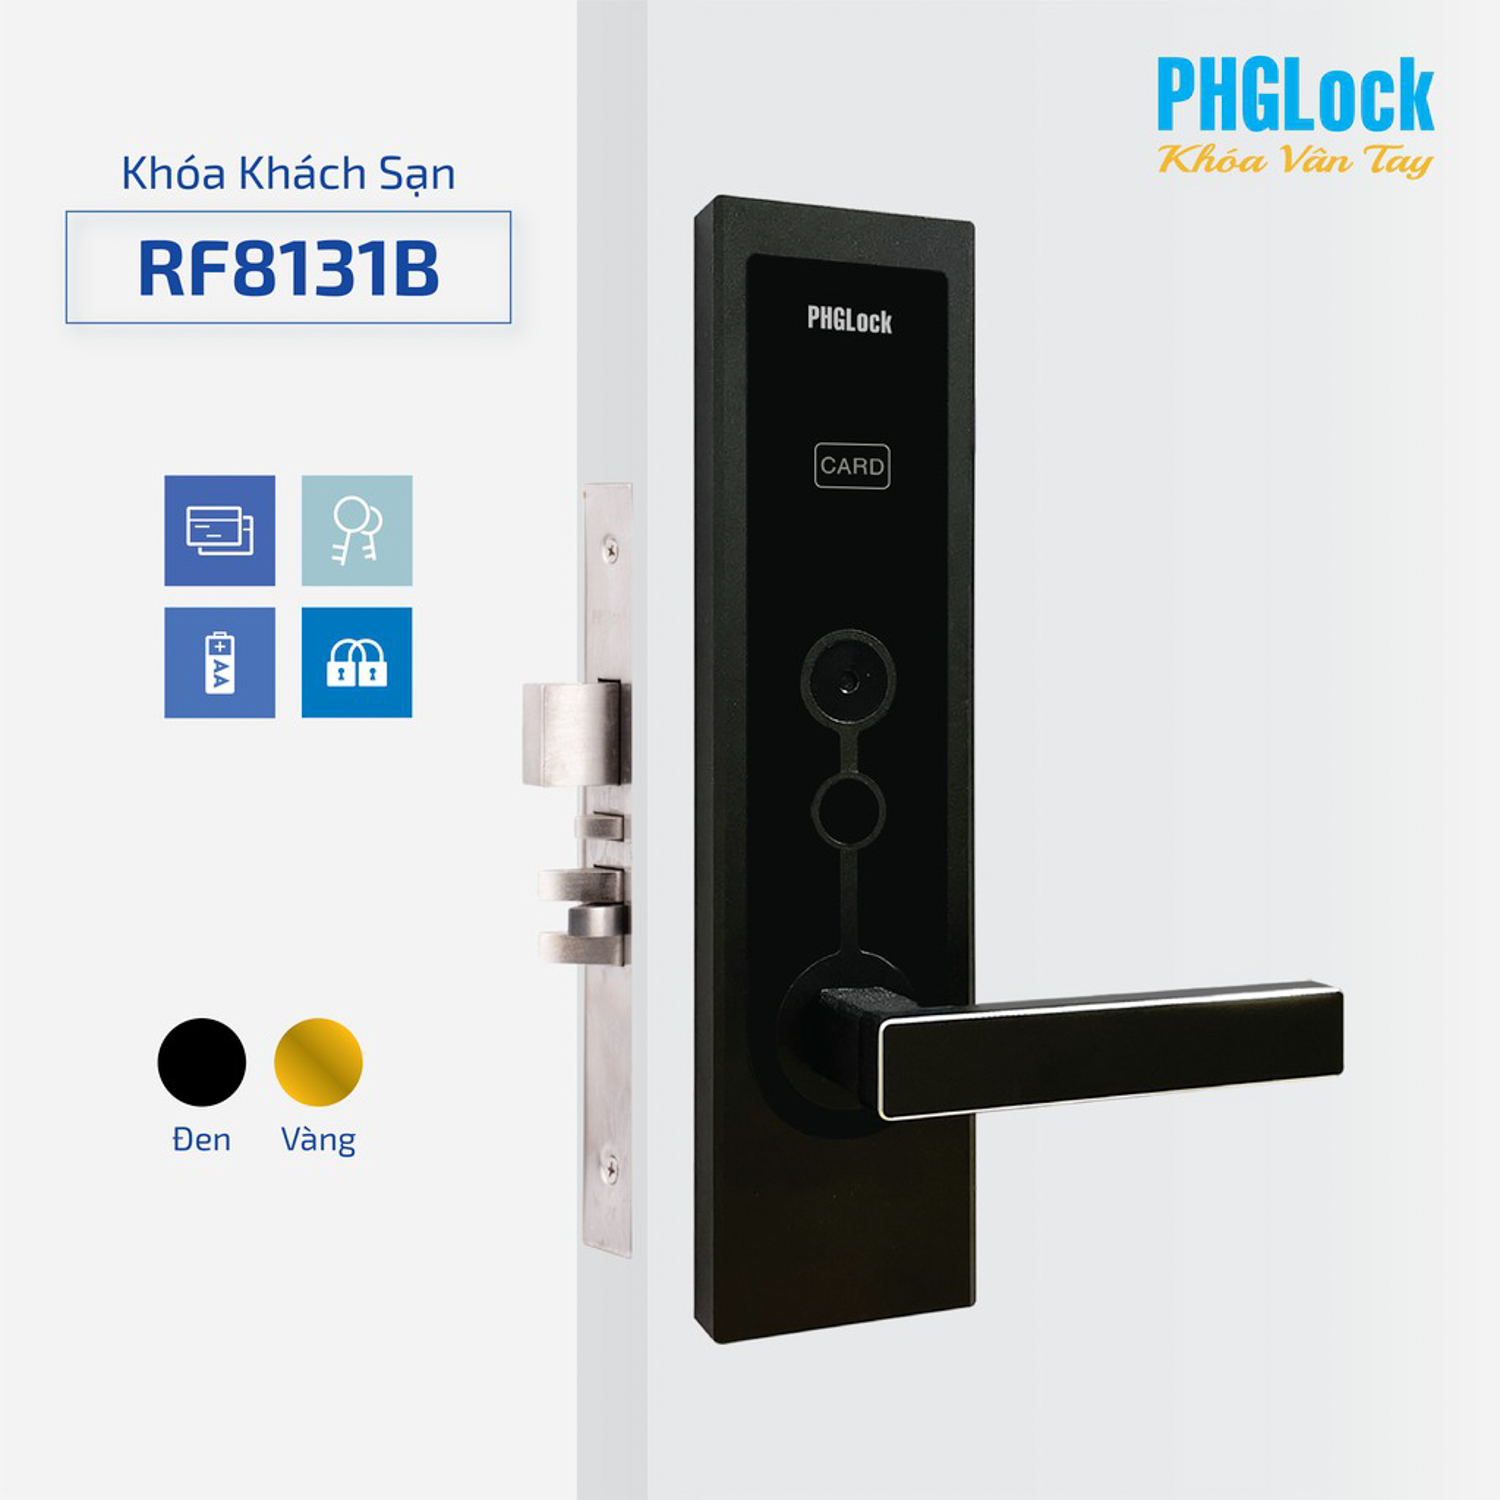 Sản phẩm khóa khách sạn PHGlock RF8131B - L sở hữu thiết kế đơn giản nhưng vô cùng hiện đại và sang trọng